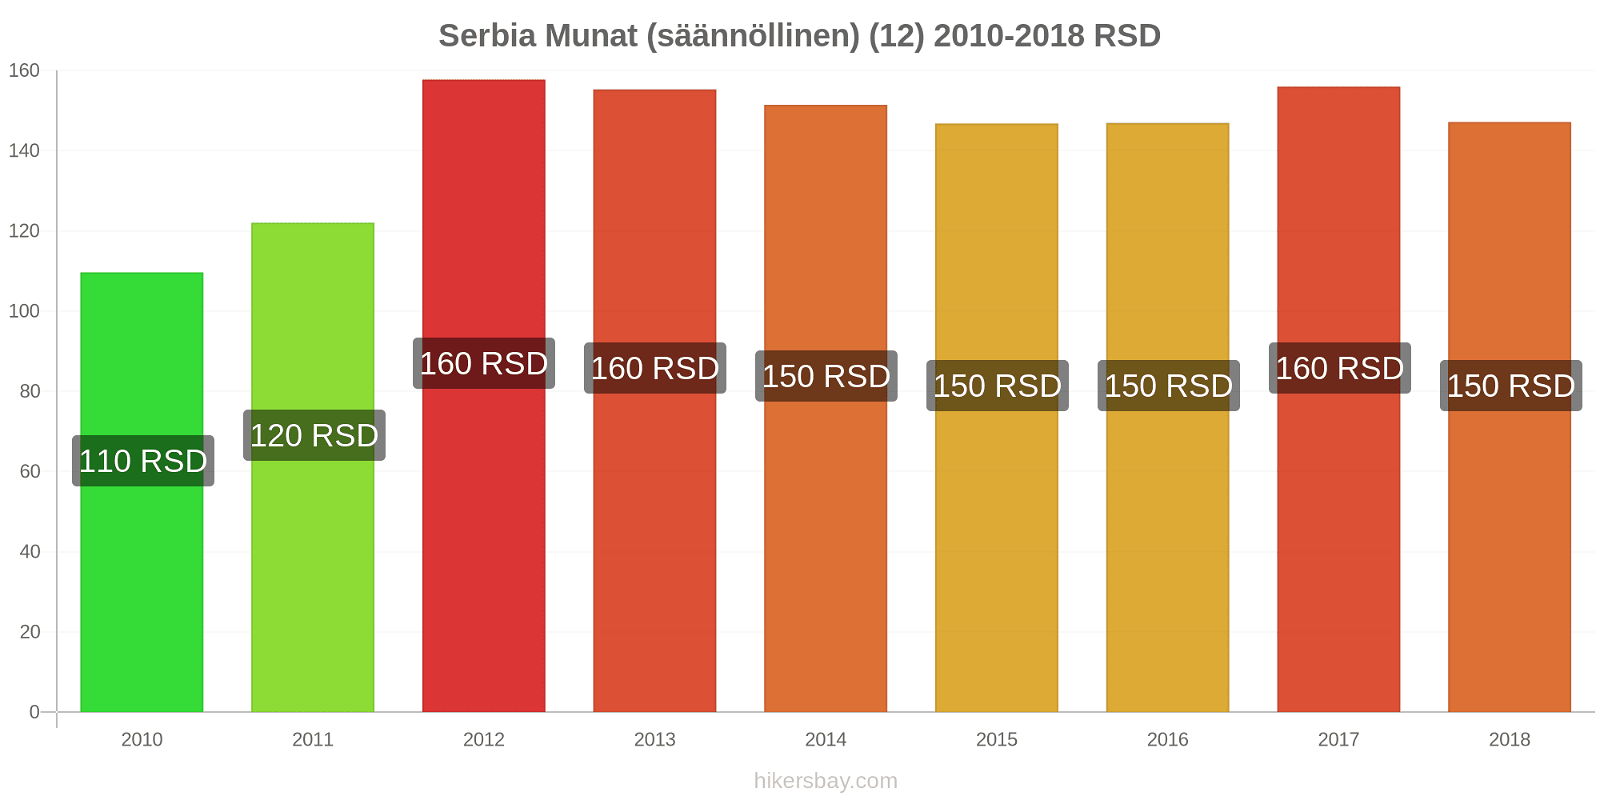 Serbia hintojen muutokset Munat (säännöllinen) (12) hikersbay.com